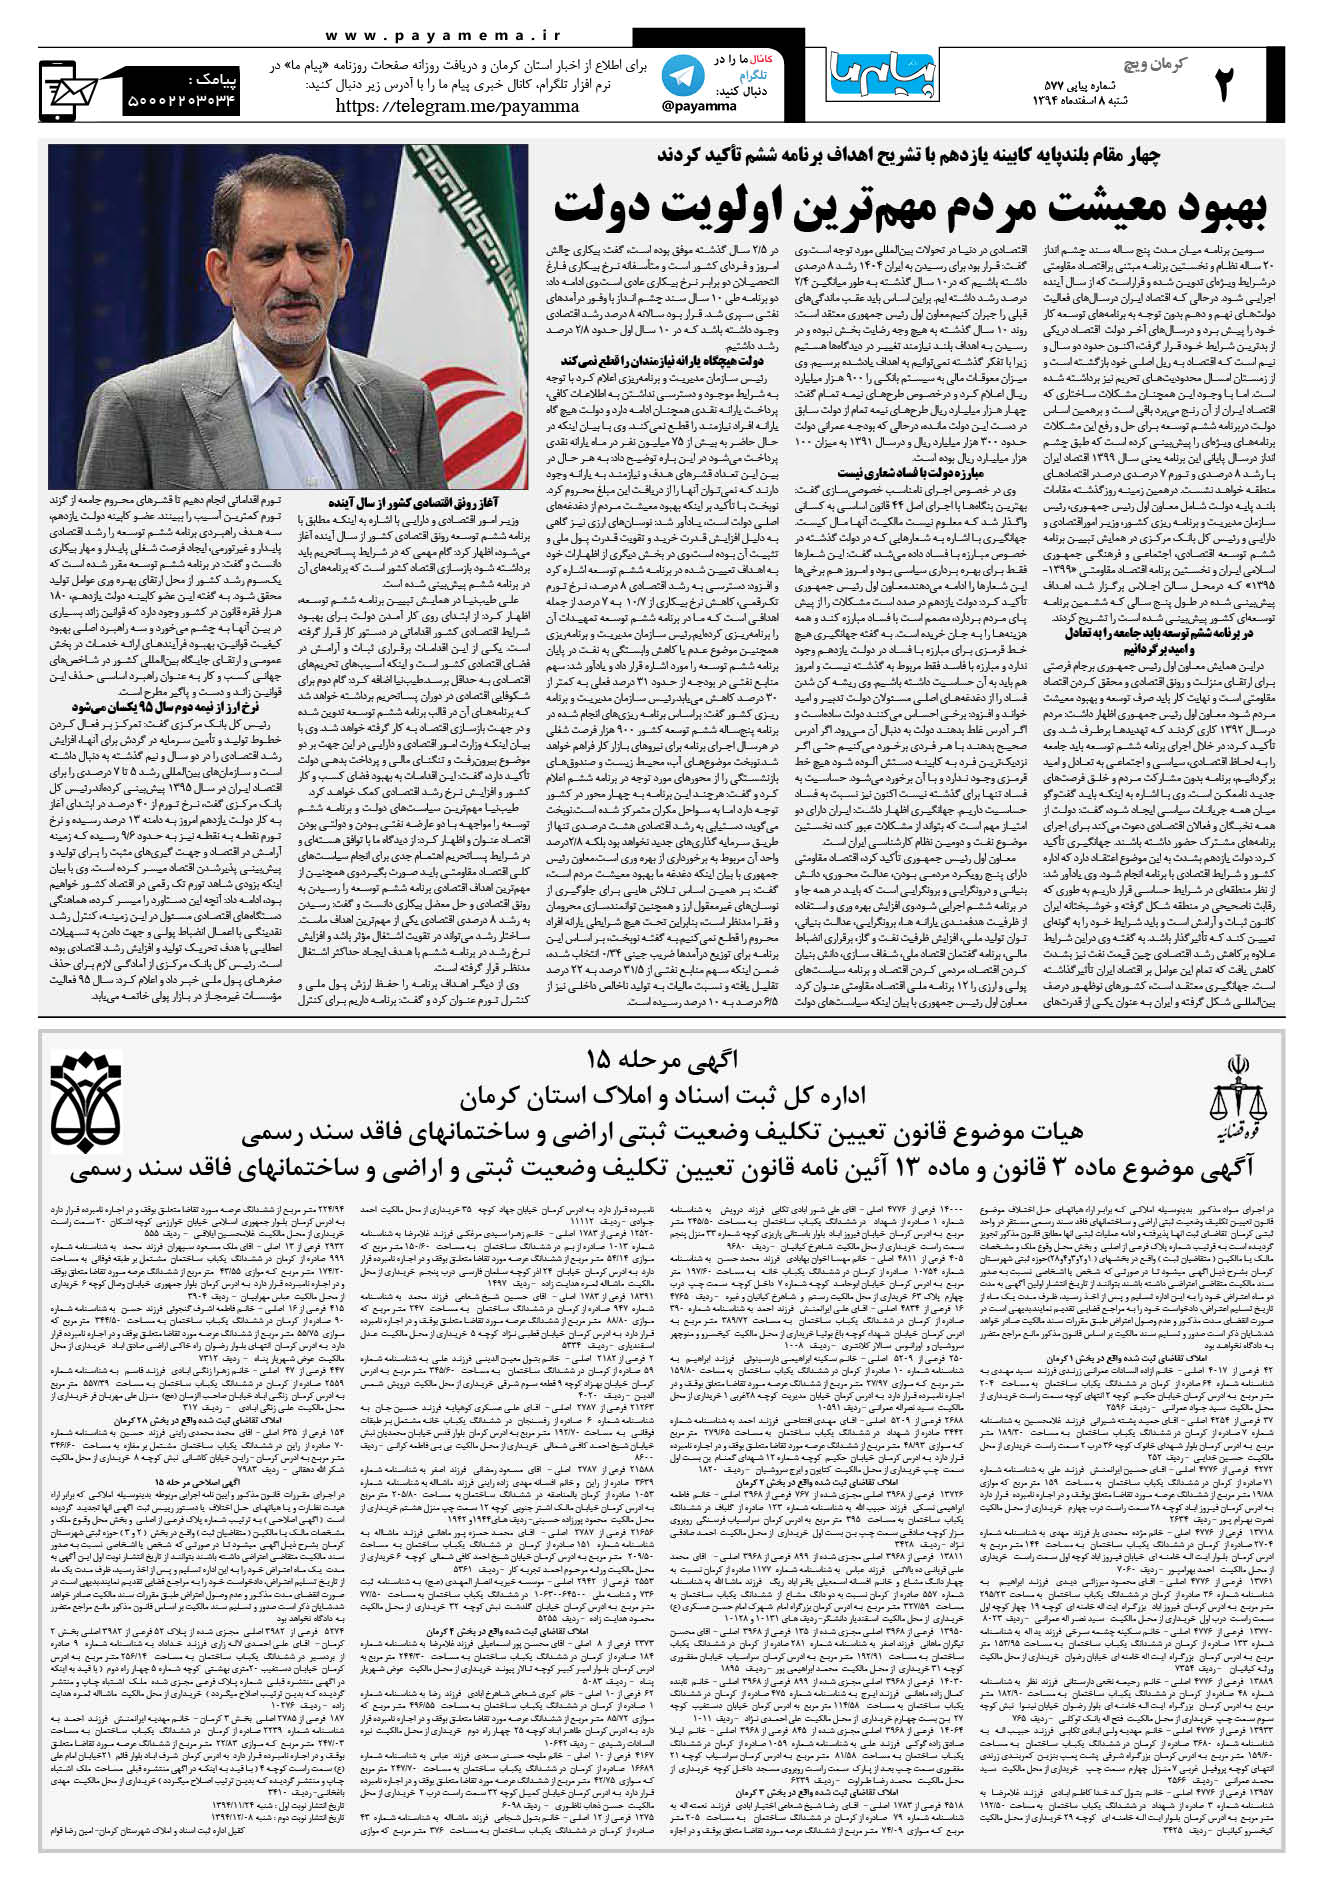 صفحه کرمان ویج شماره 577 روزنامه پیام ما